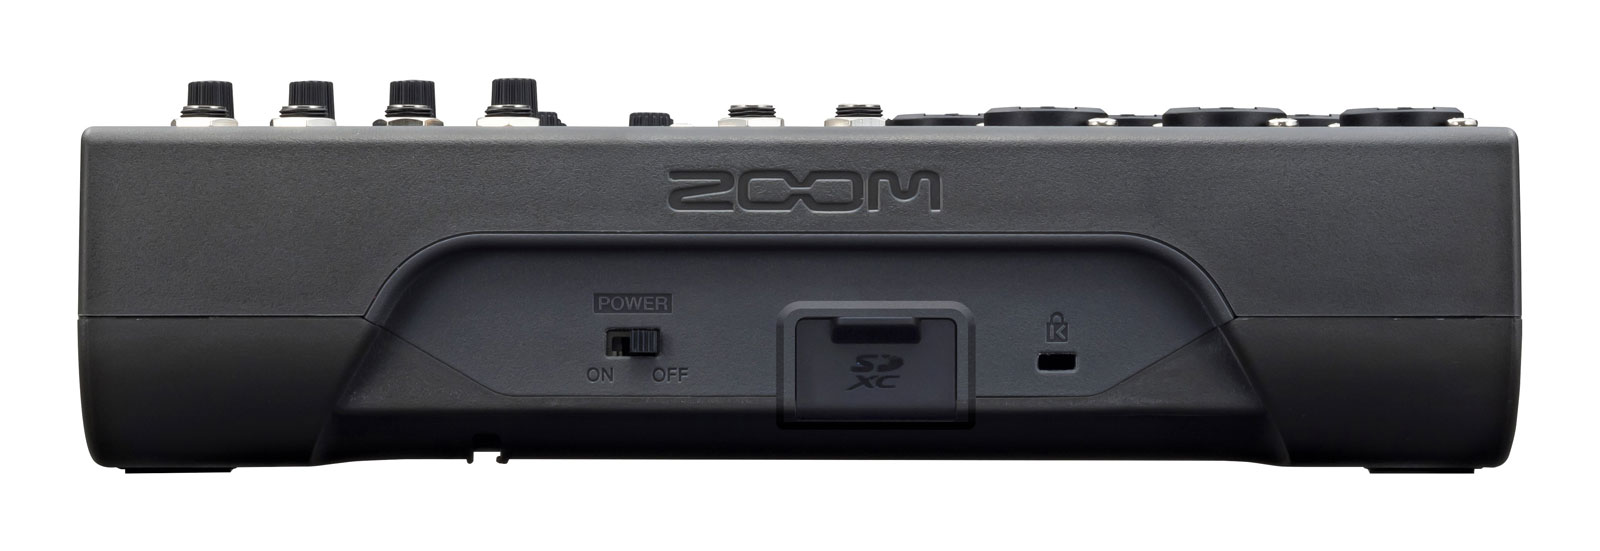 Zoom Livetrak L-8 - Analoge Mengtafel - Variation 3